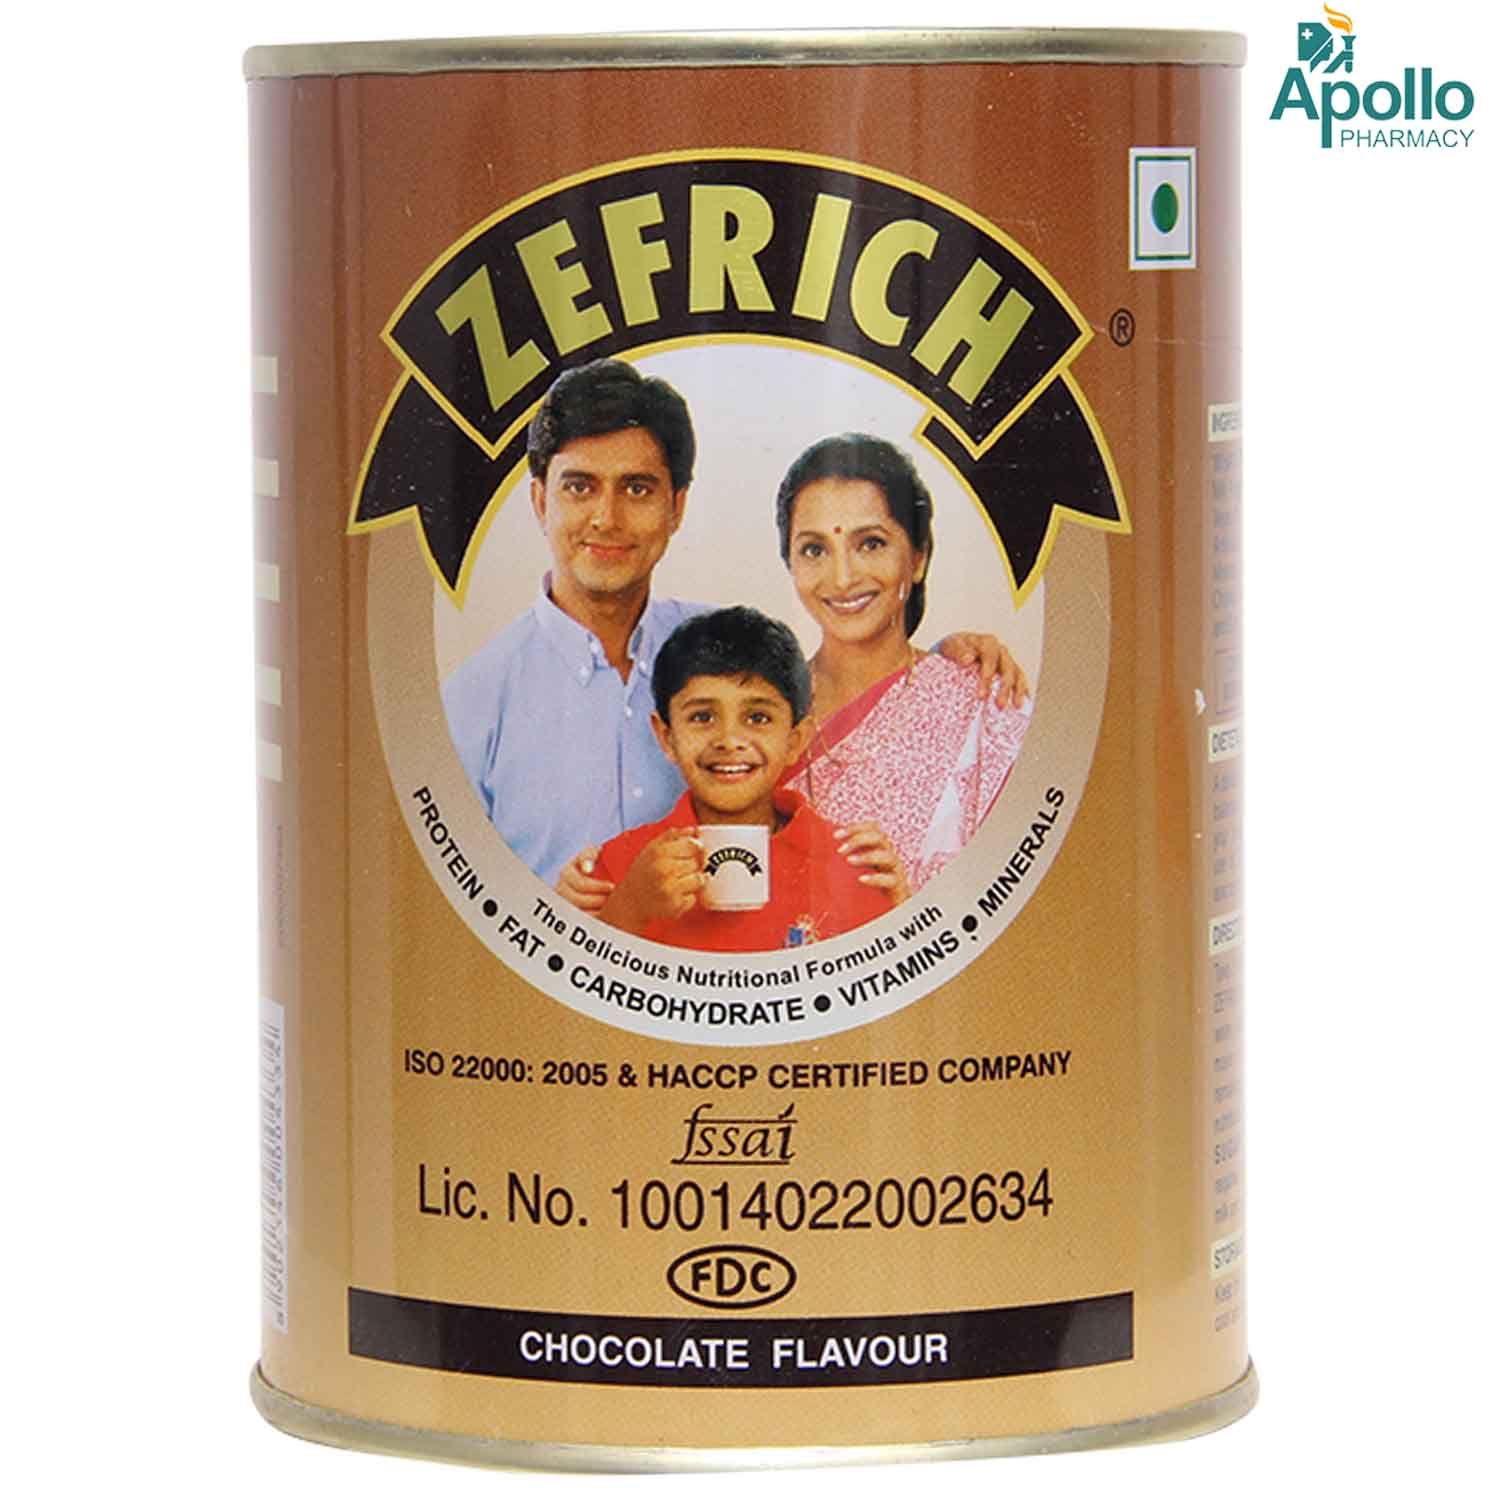 Buy Zefrich Chocolate Flavoured Powder, 200 gm Tin Online